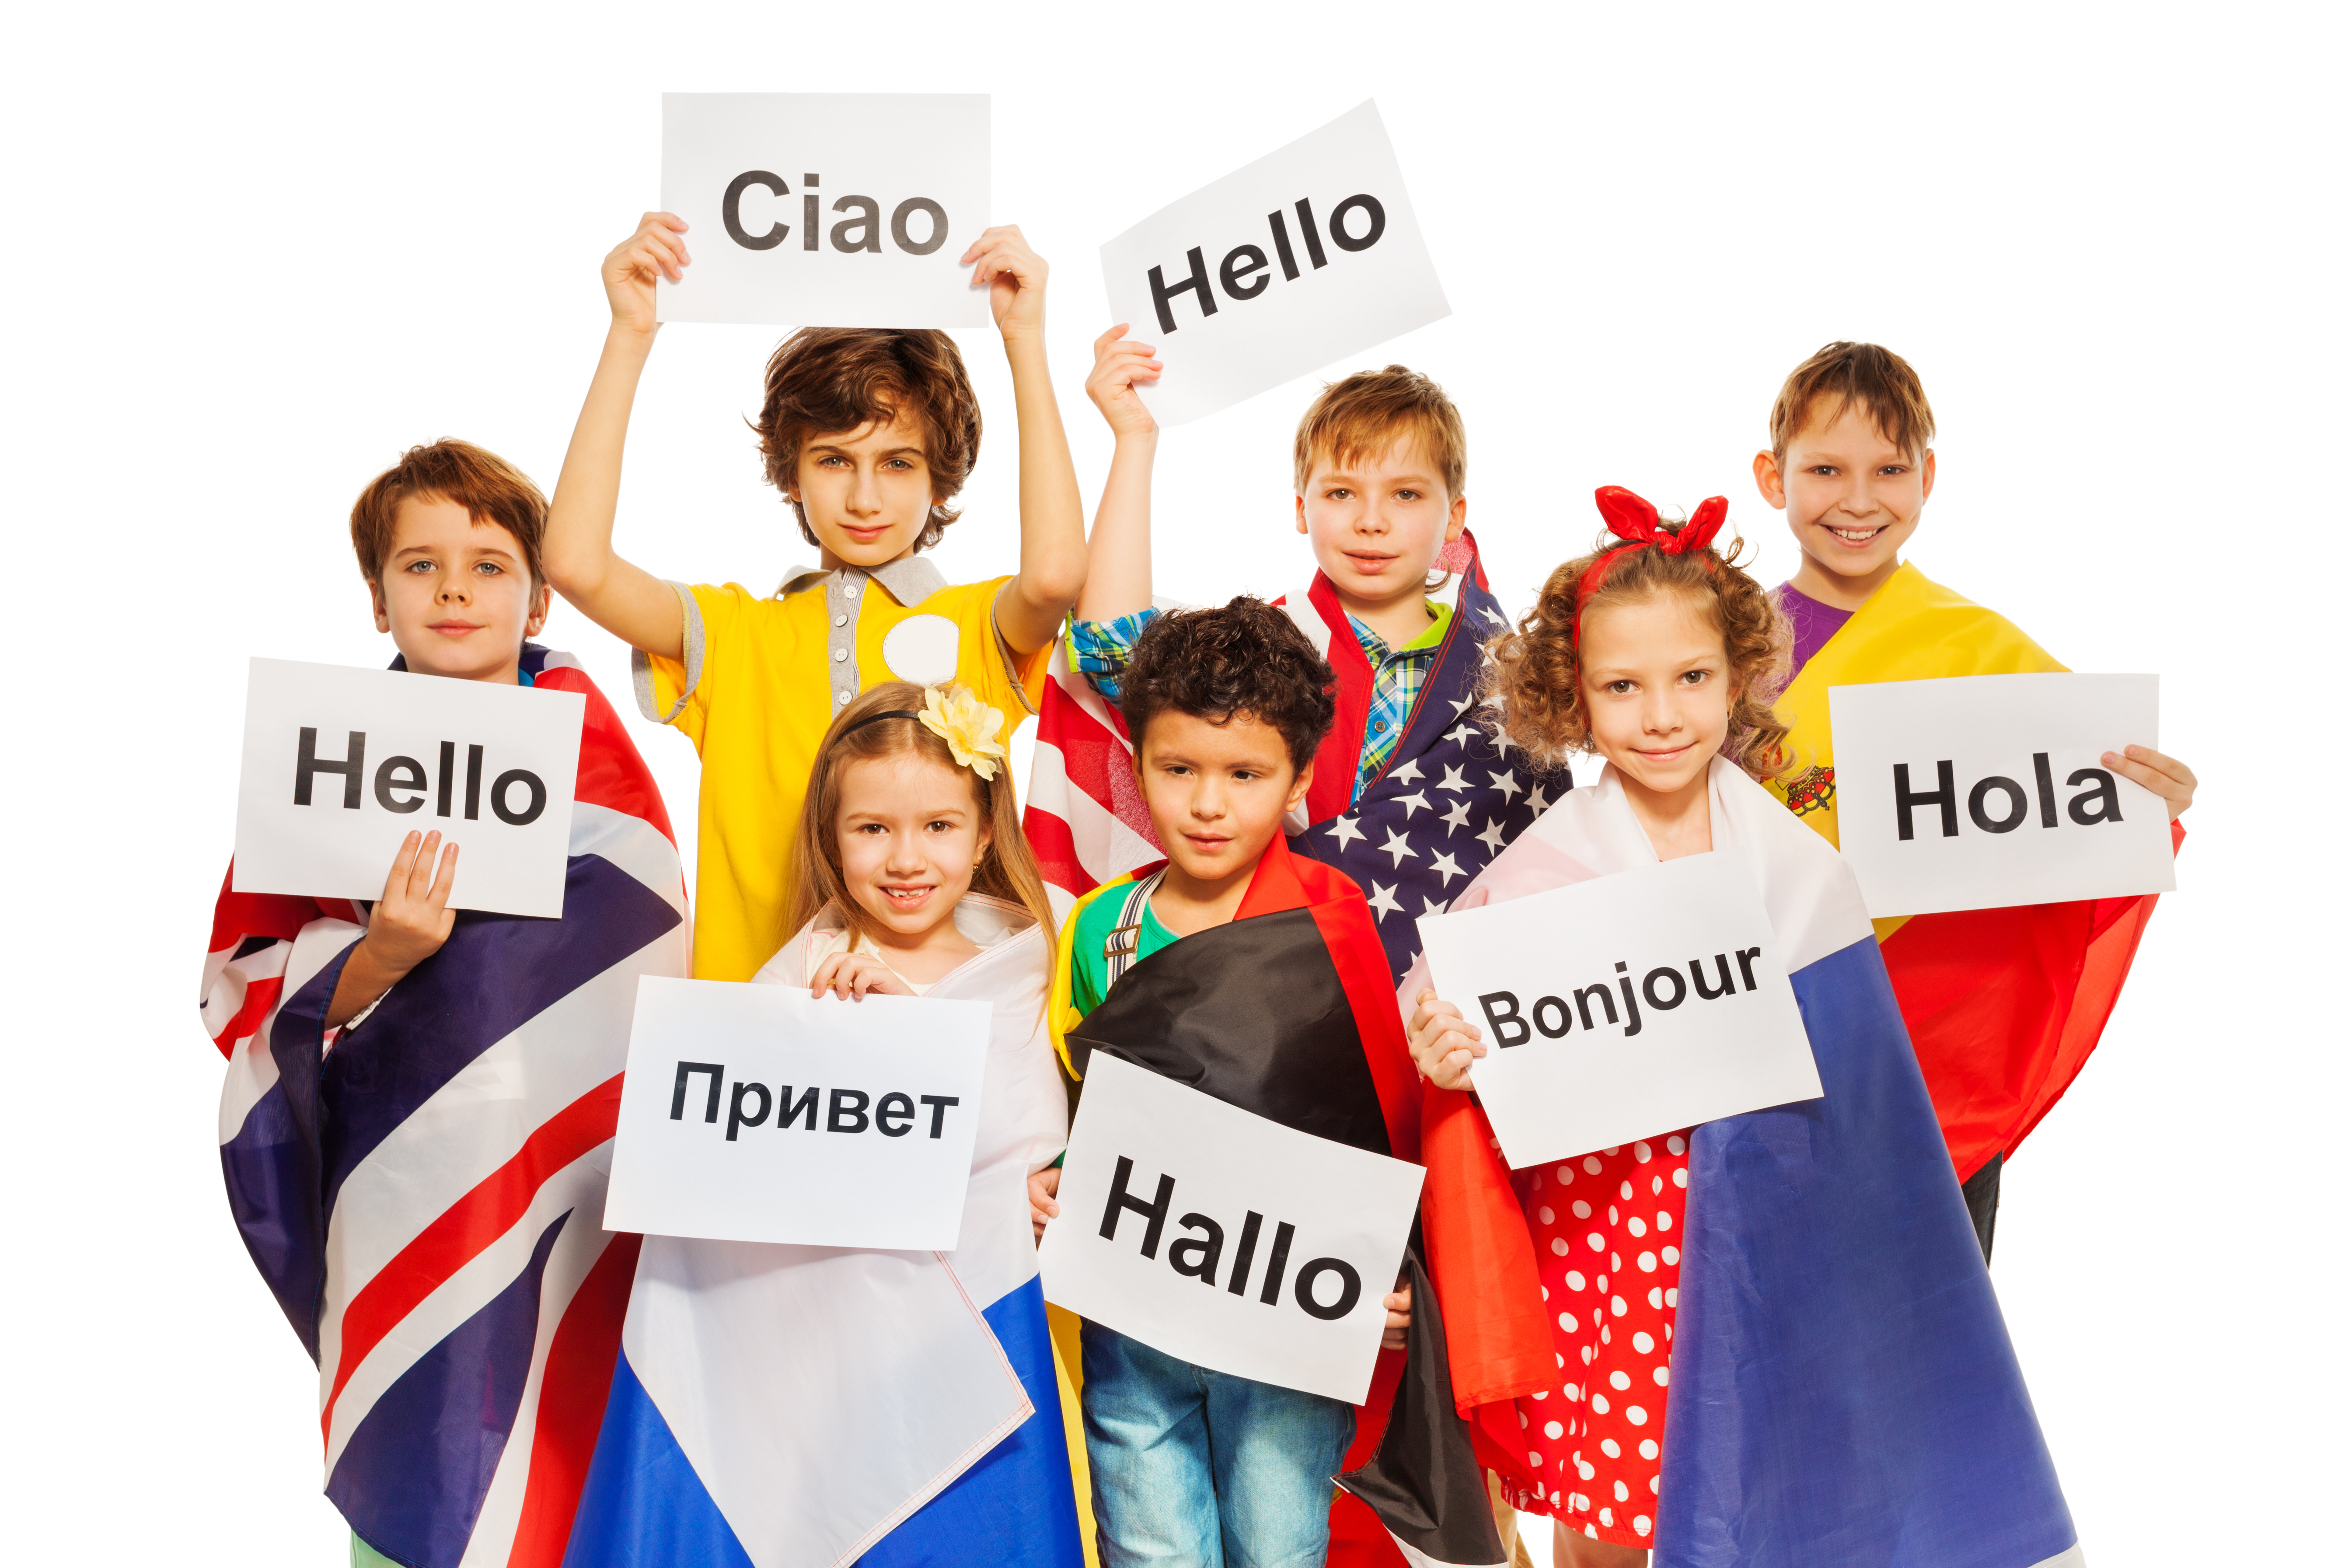 Иностранные языки. Изучение иностранного языка. Иностранные языки для детей. Изучение языков. My new language